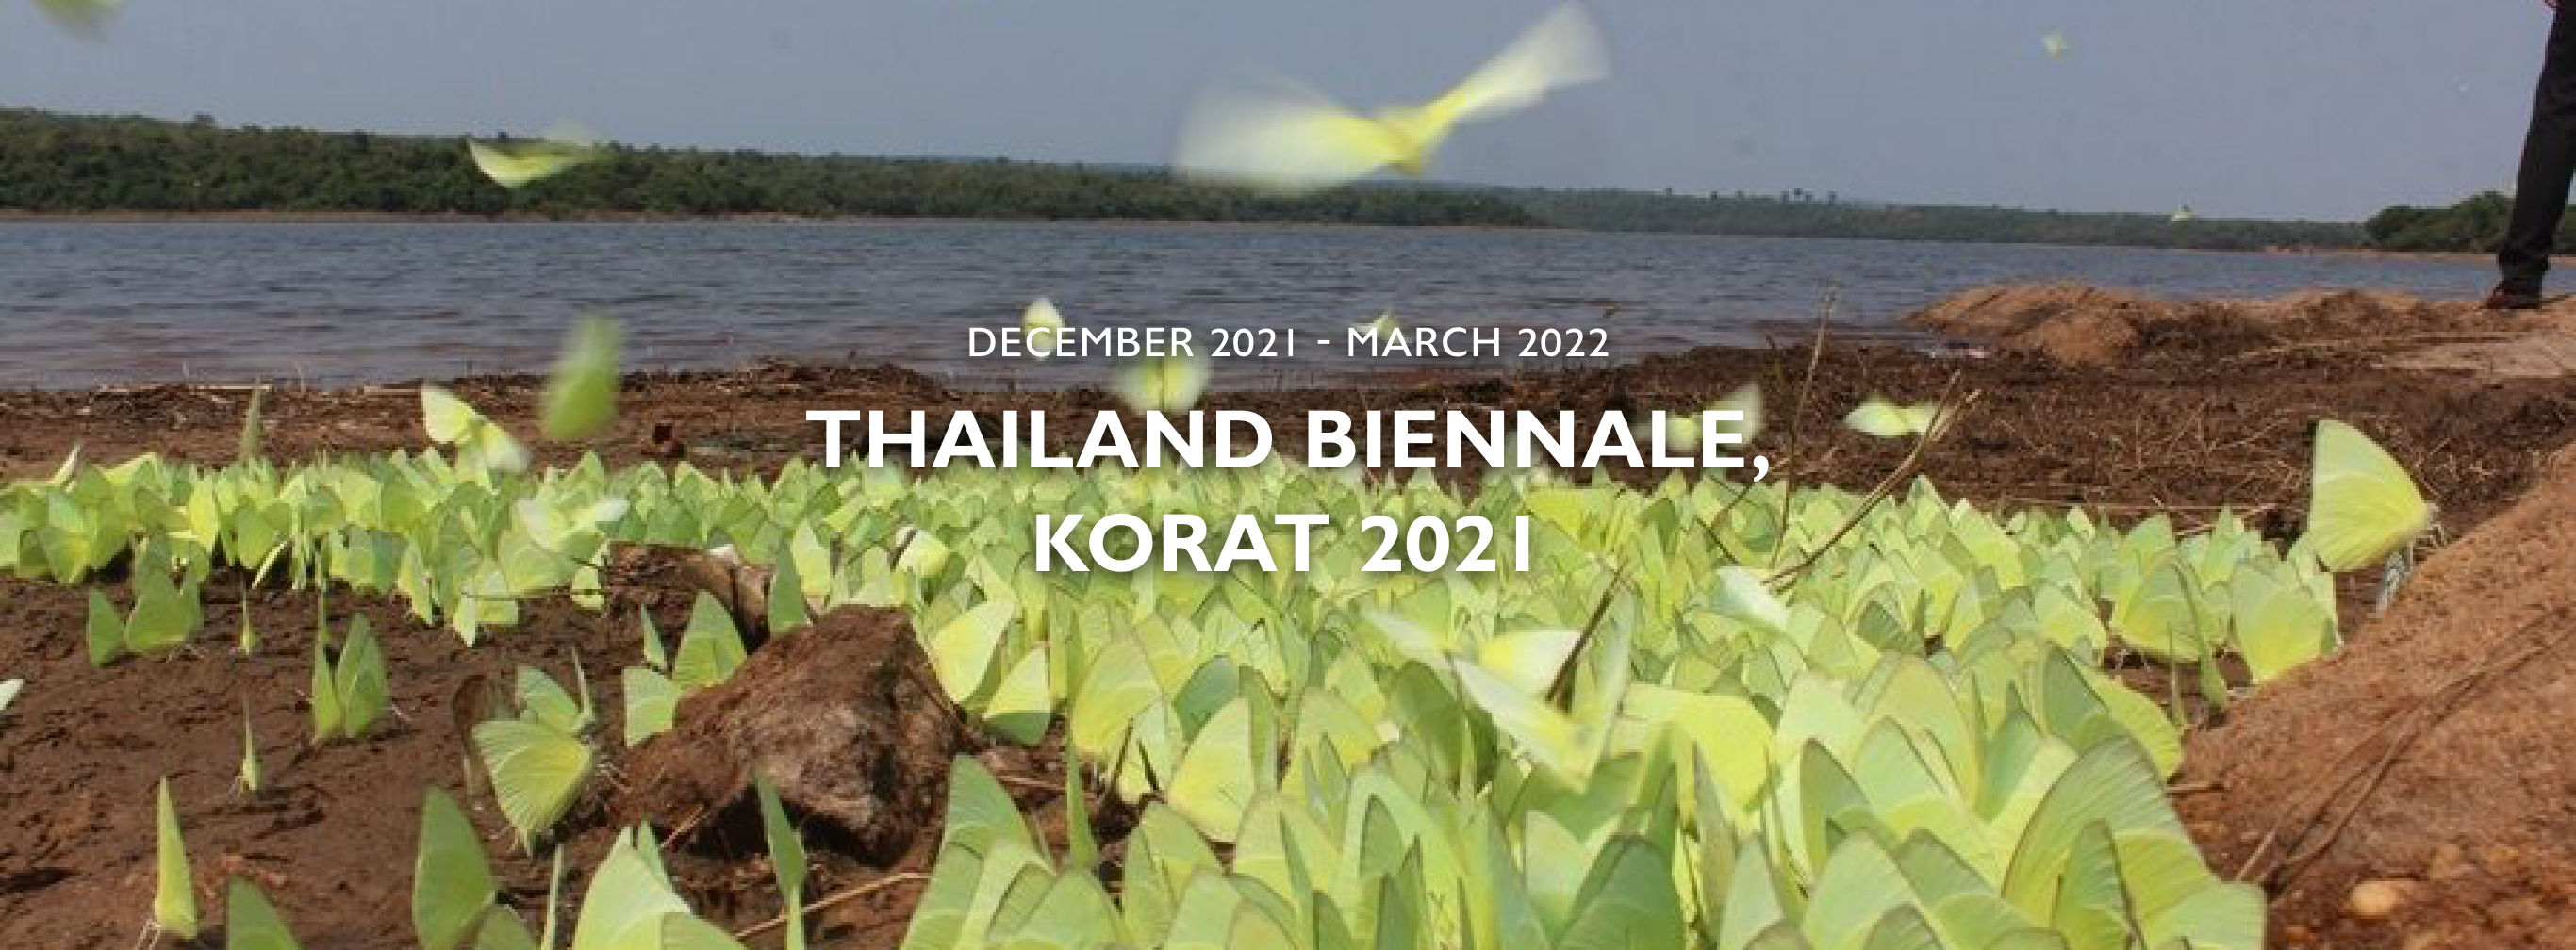 Thailand Biennale, KORAT 2021